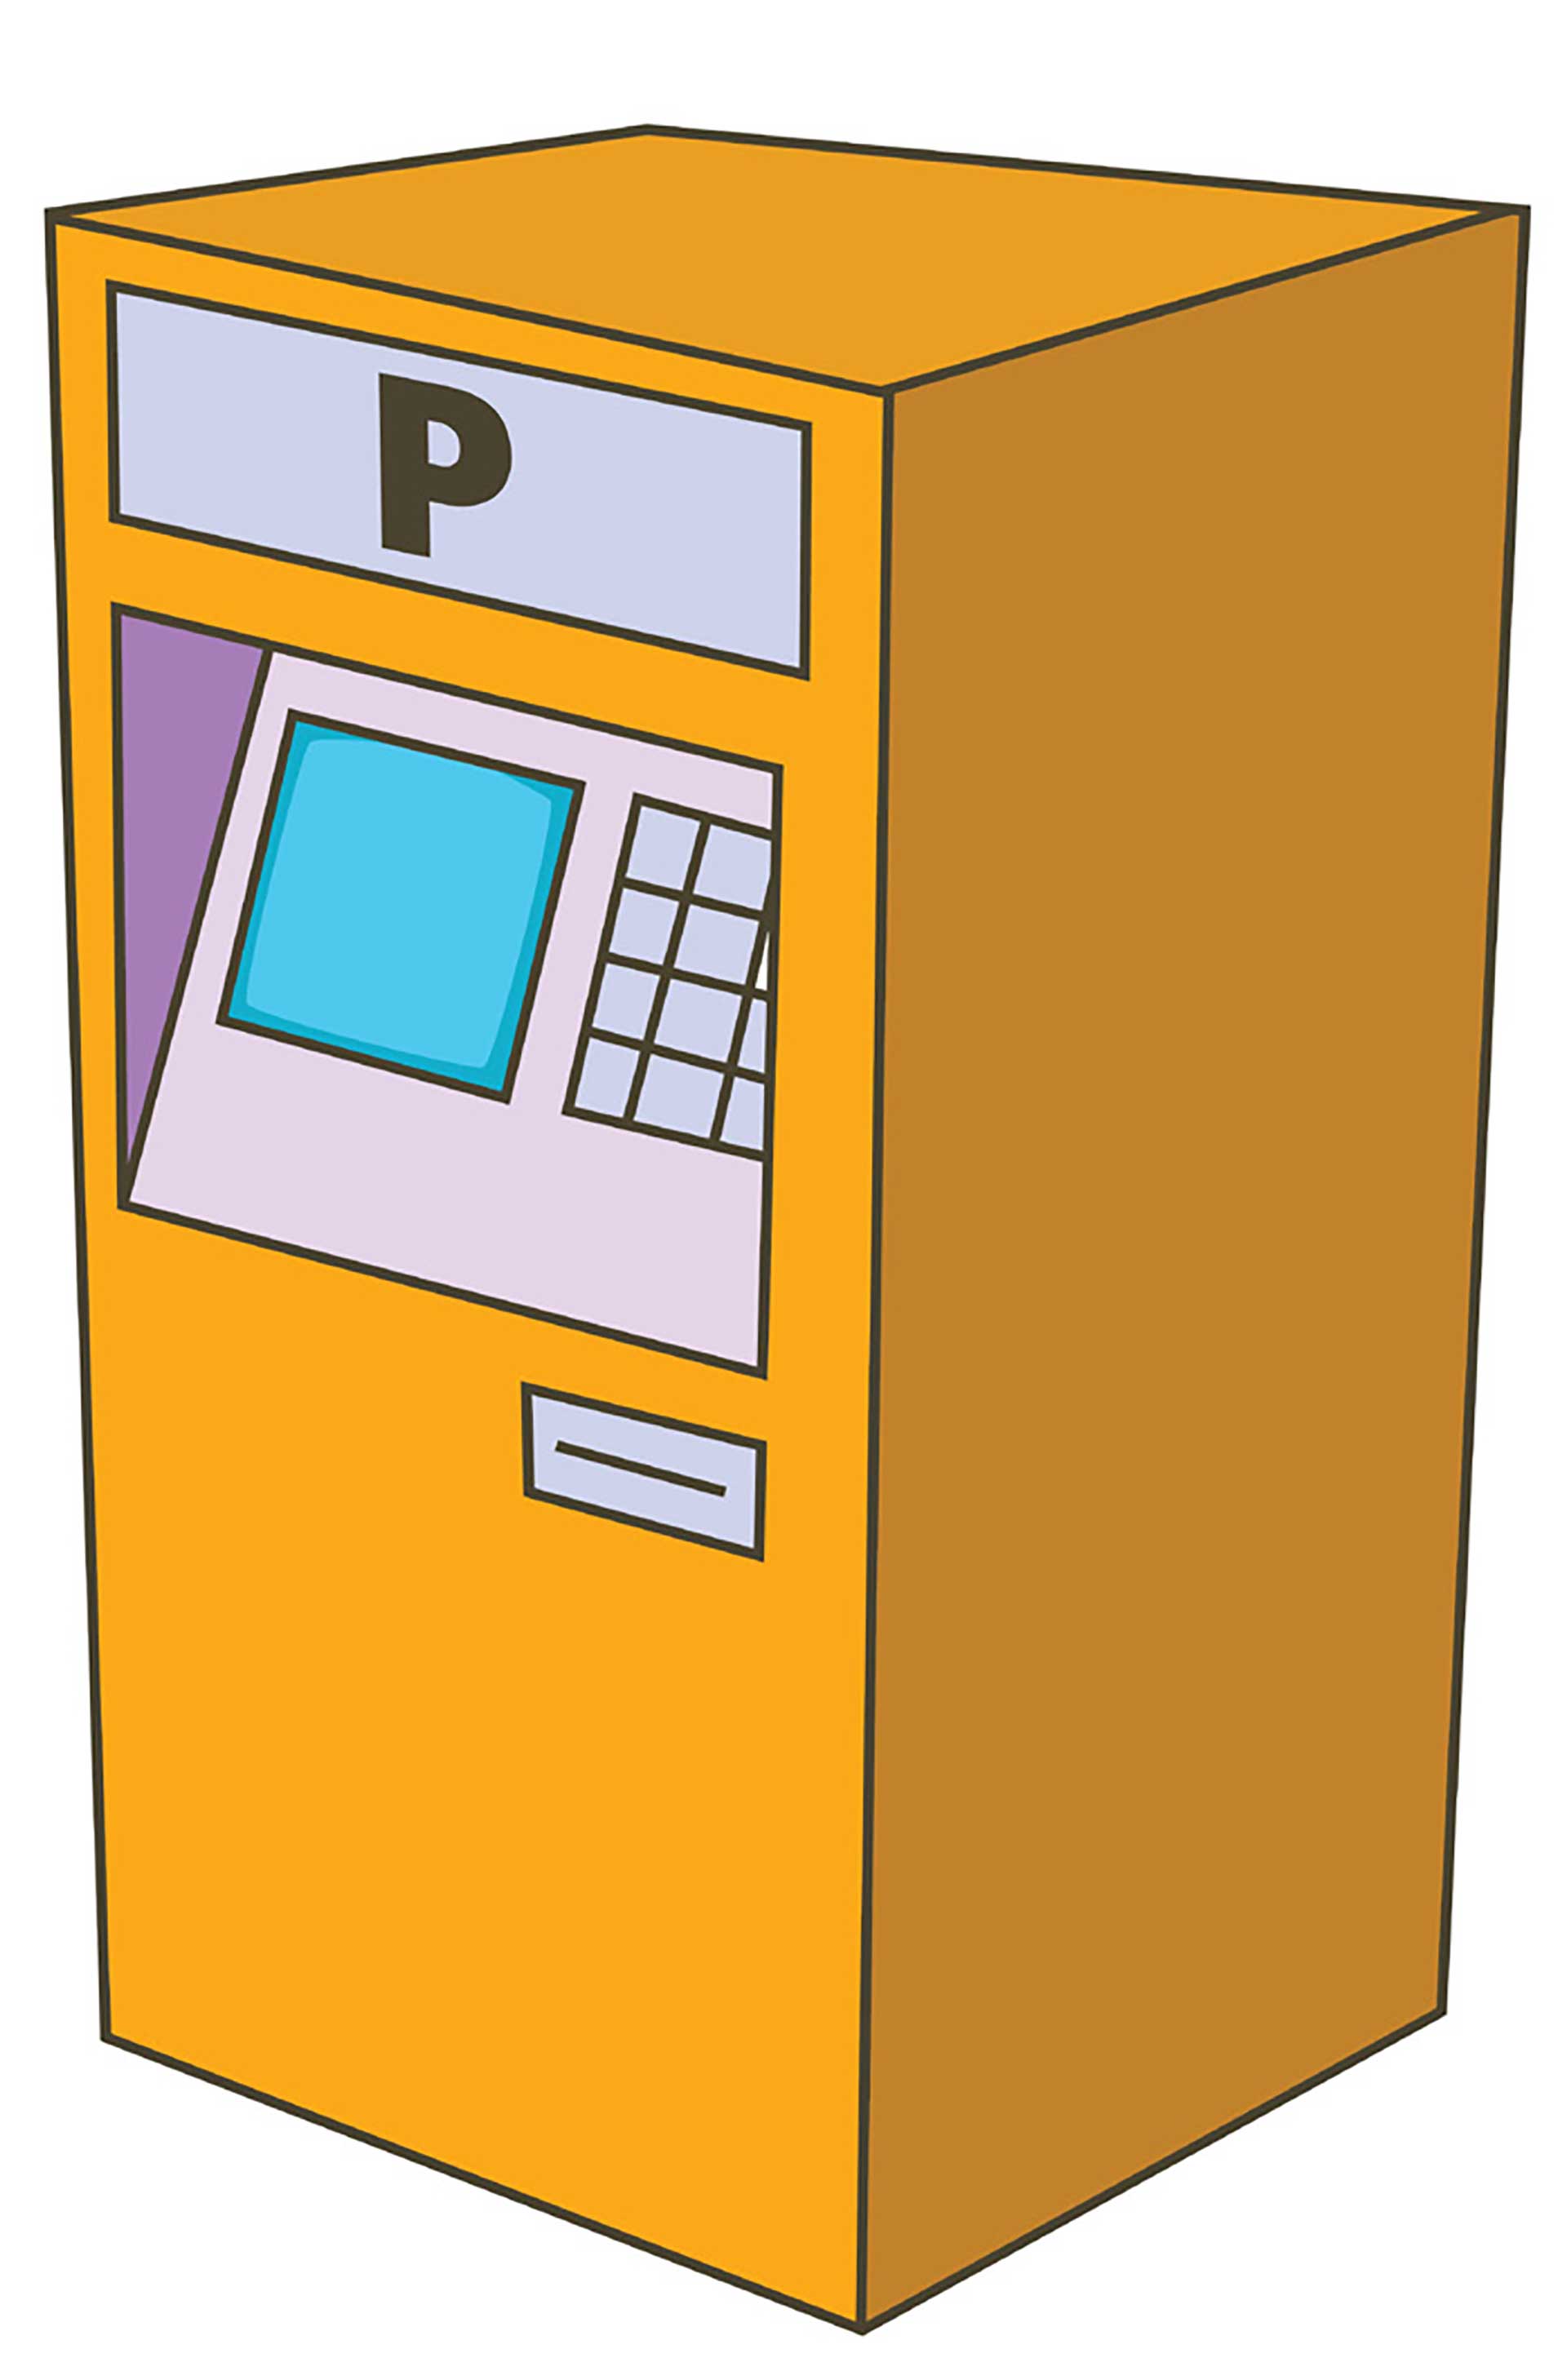 Orange betalingsautomat med teksten "P", der angiver parkering, digital illustration.